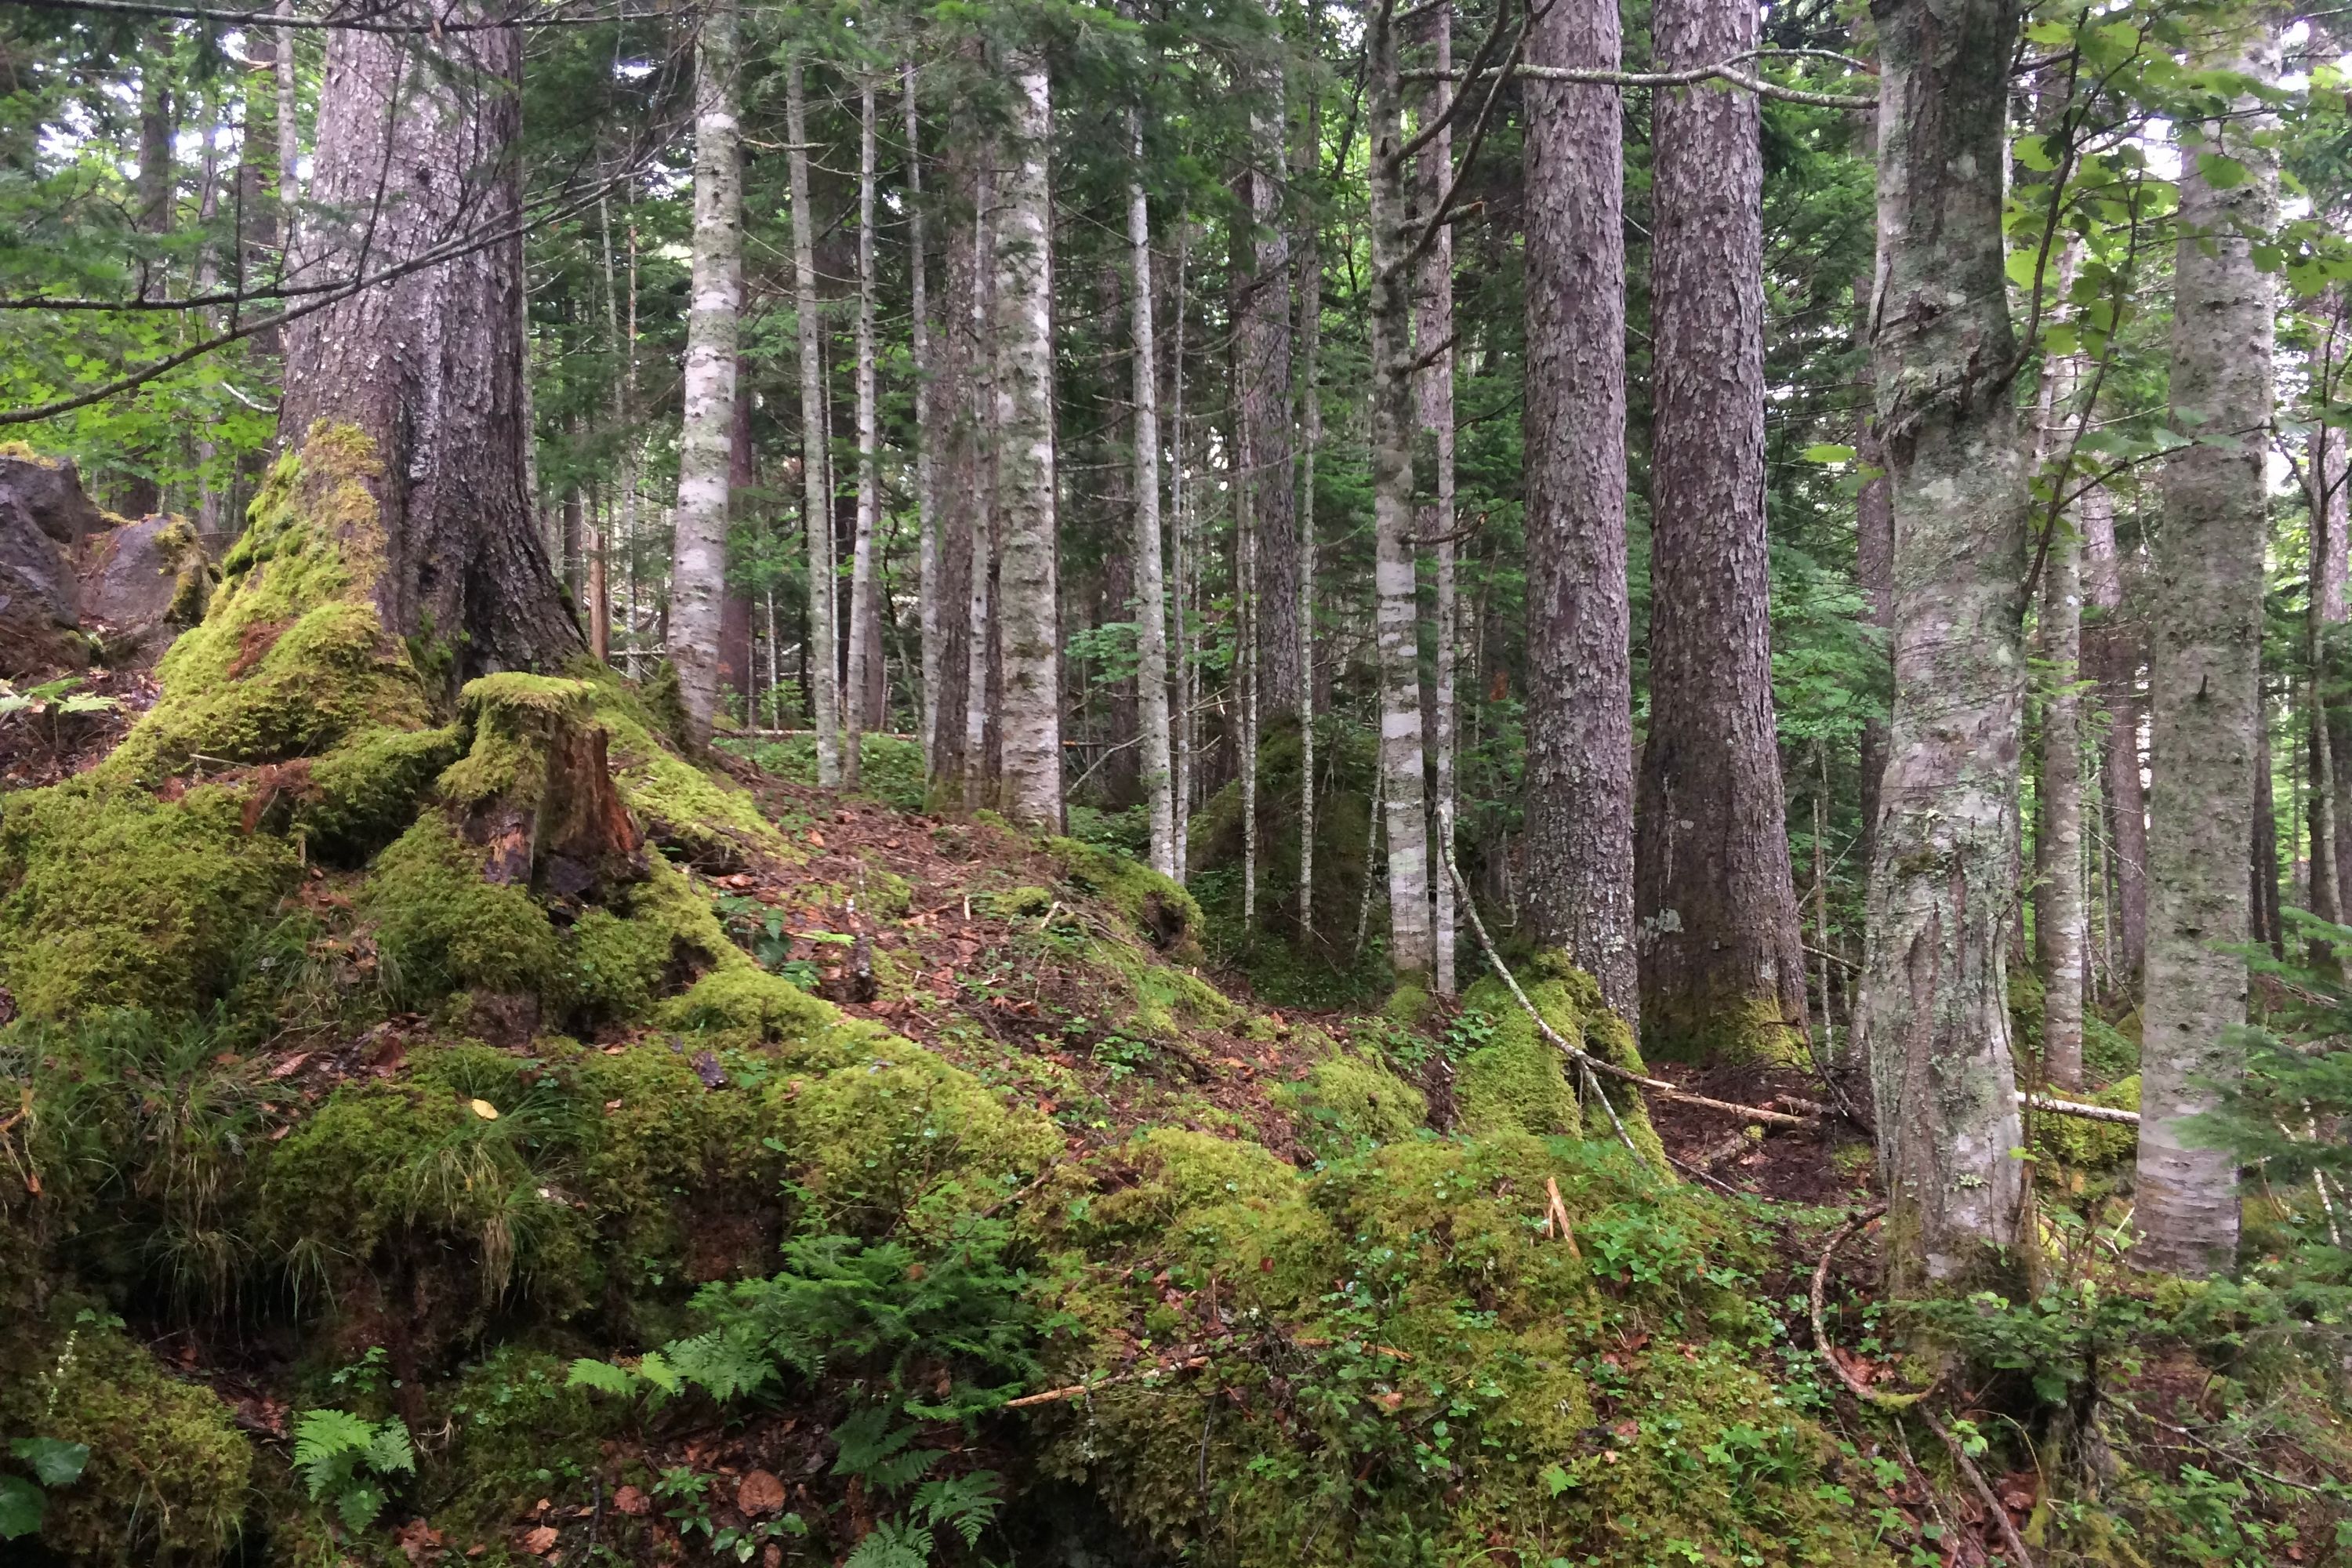 A forest of birch and fir.